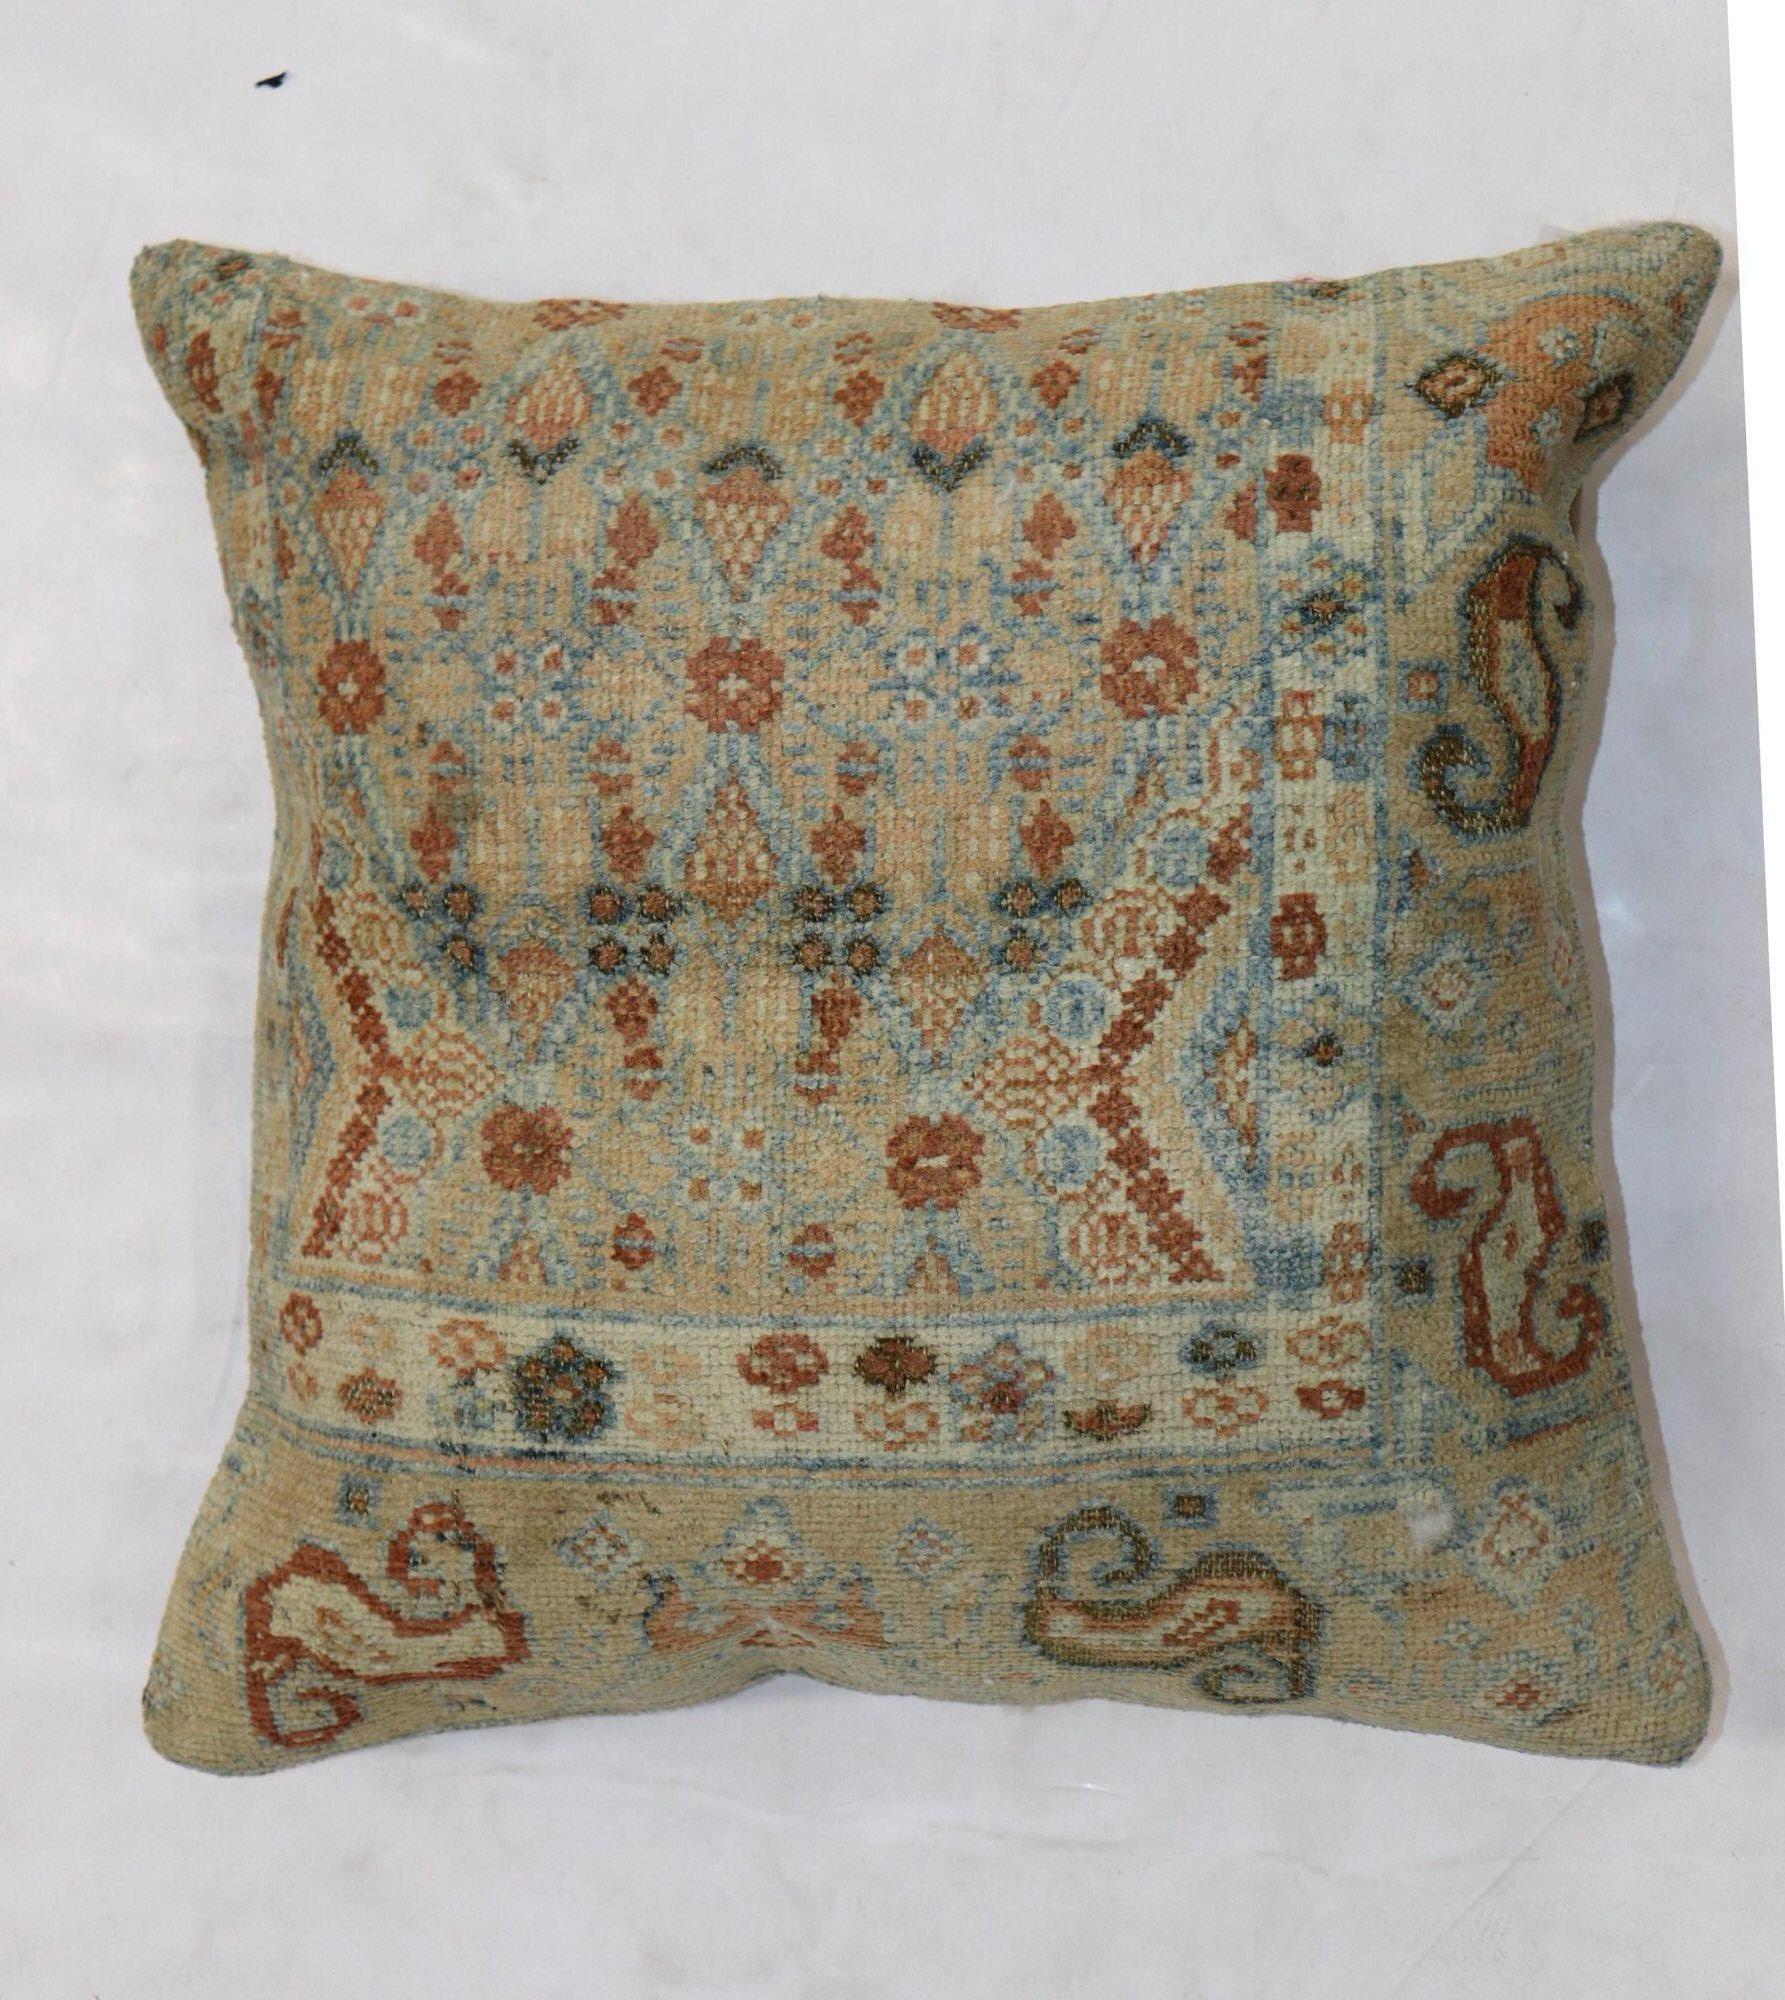 Grand coussin de taille carrée fabriqué à partir d'un tapis persan Serab du début du XXe siècle. Fermeture à glissière, insert en polyfill fourni

Mesures : 20